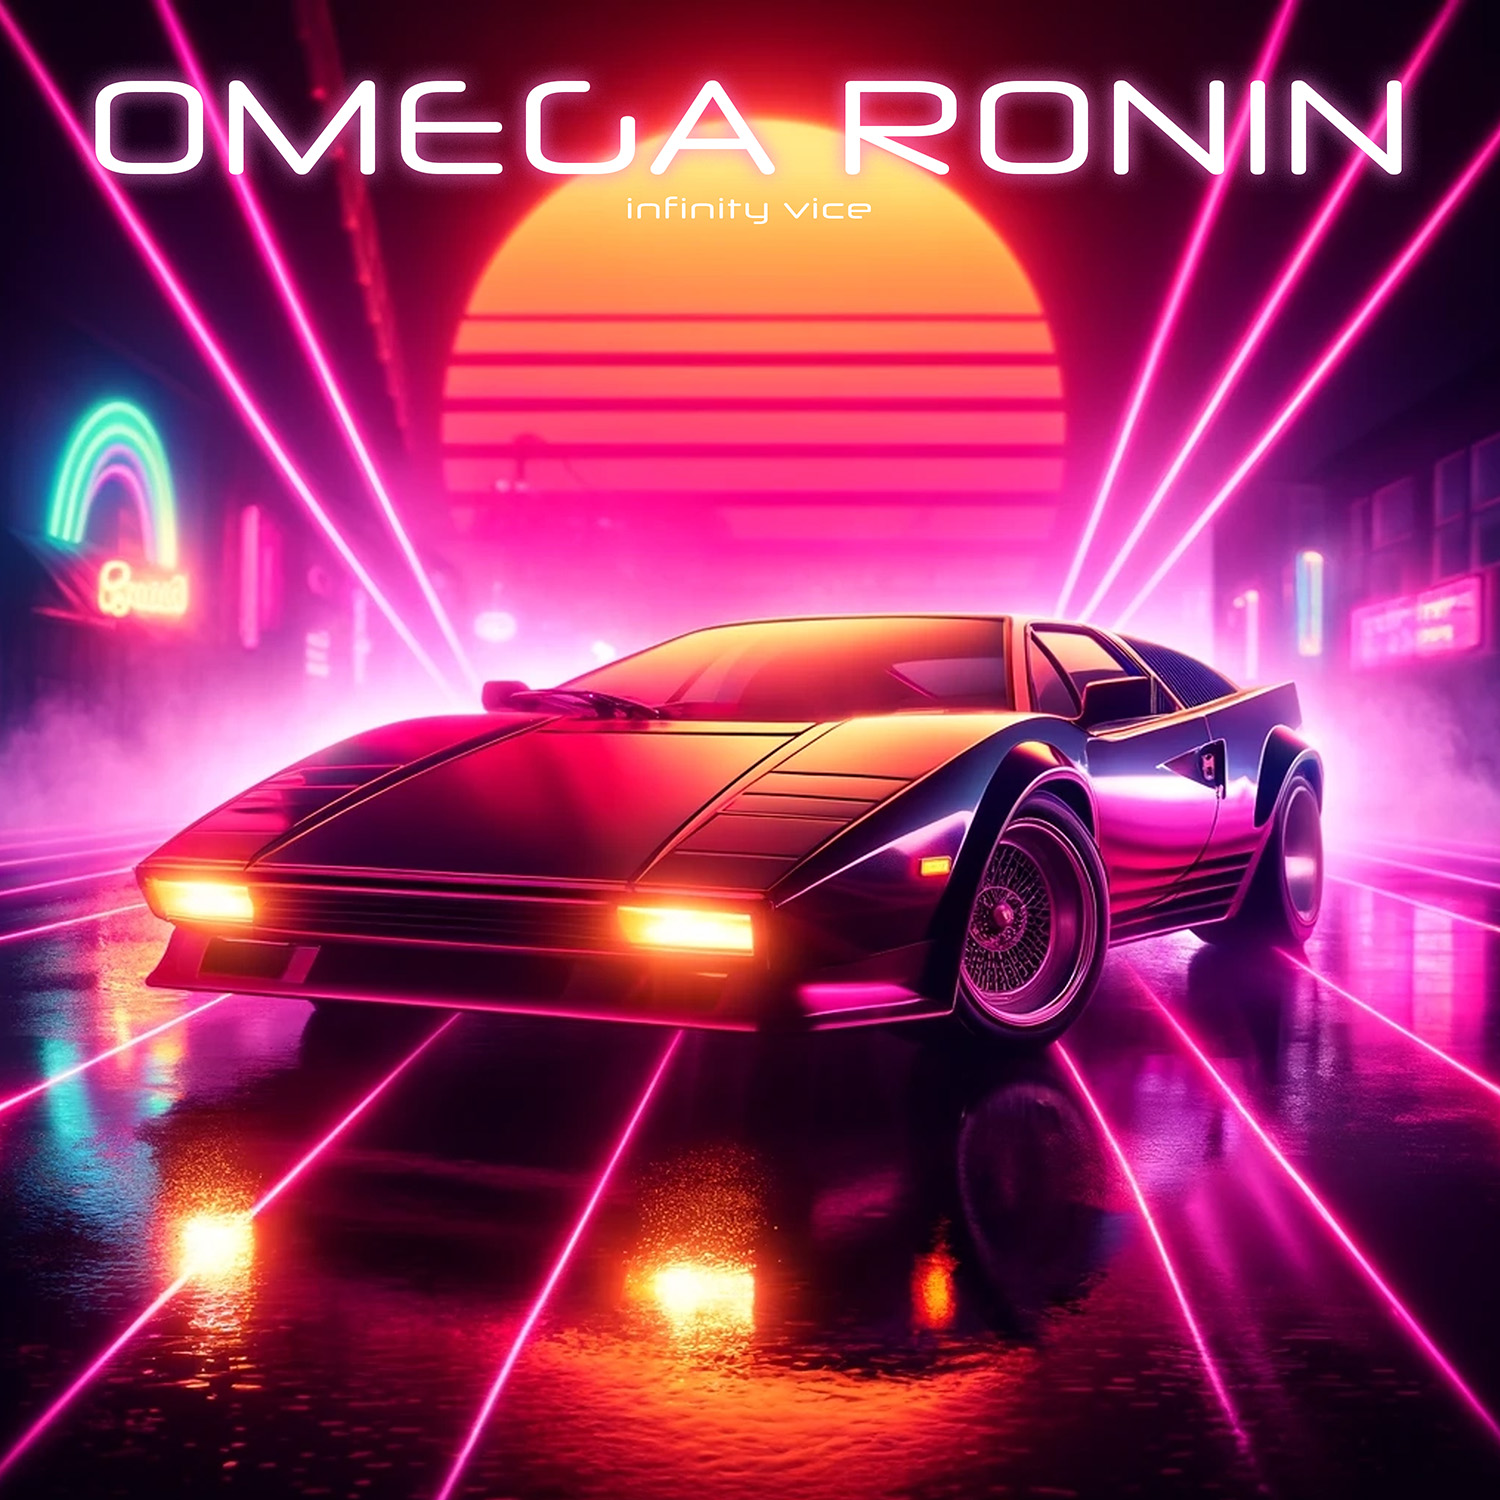 Omega Ronin: Infinity Vice